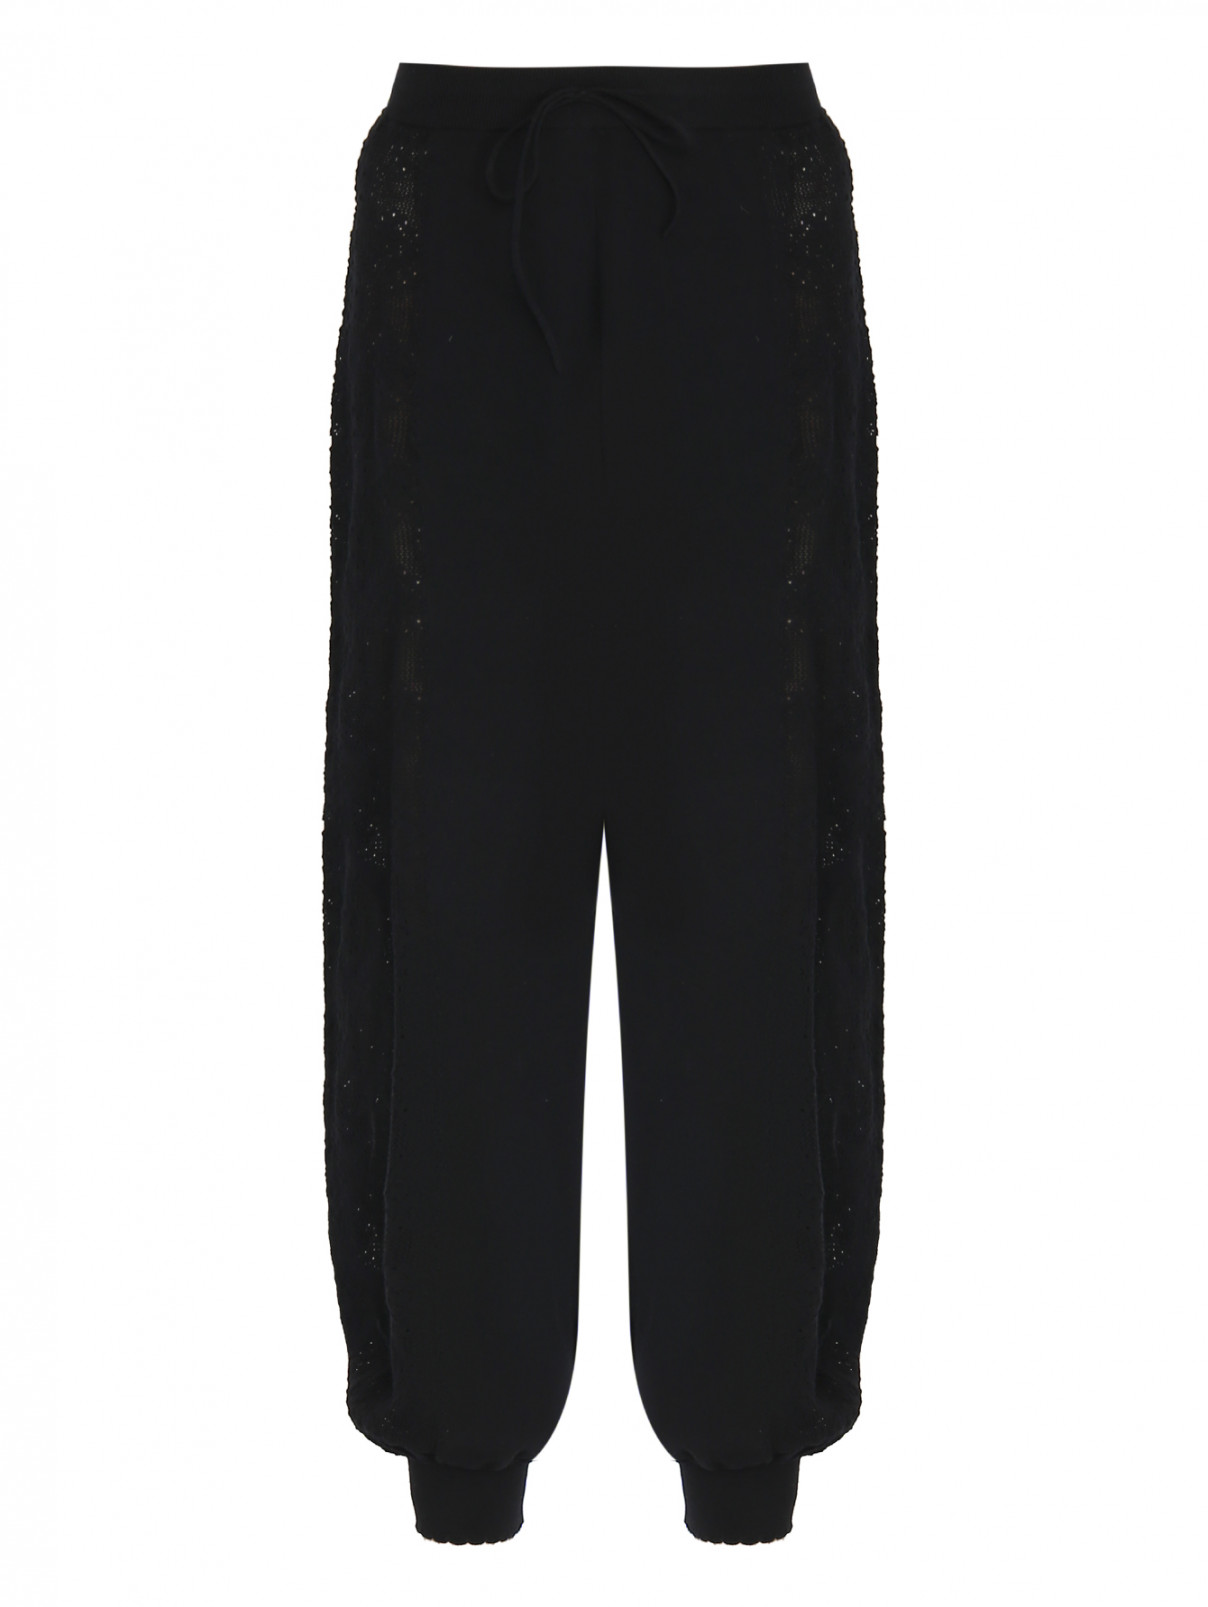 Трикотажные брюки из хлопка Moschino Boutique  –  Общий вид  – Цвет:  Черный